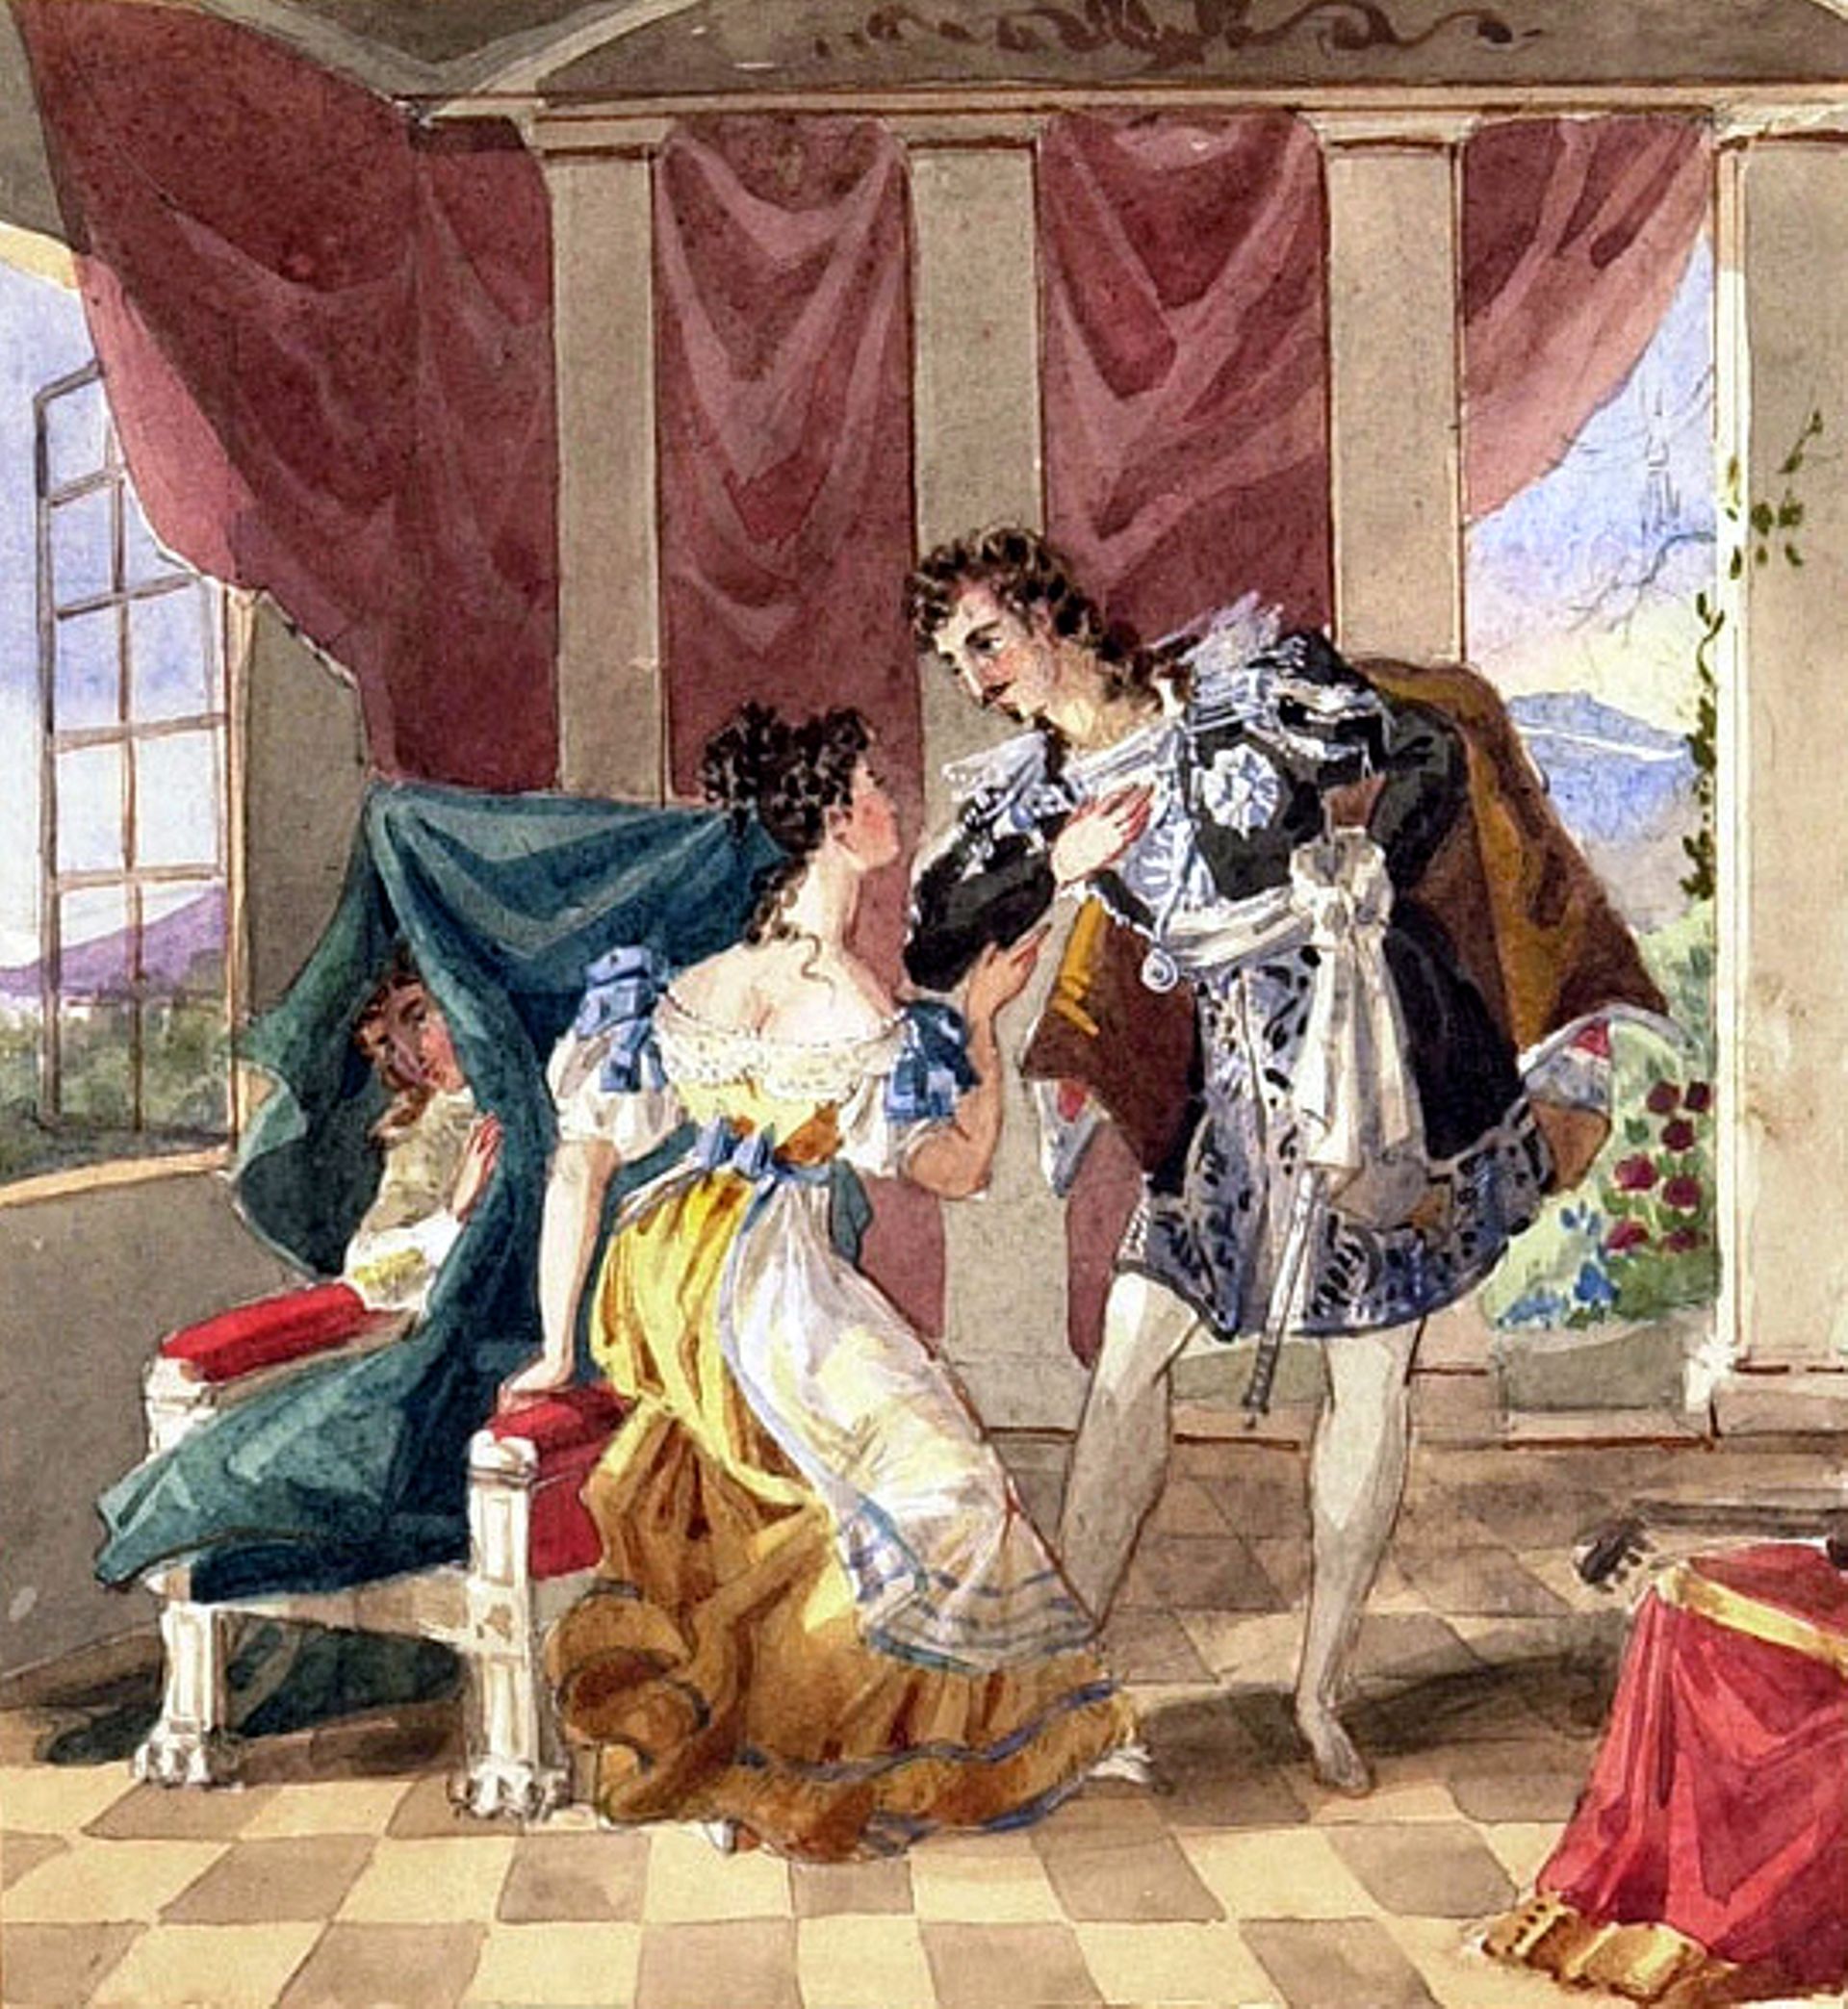 Acte I : Le comte fait des avances à Suzanne tandis que Chérubin est dissimulé sur le fauteuil (Aquarelle anonyme)